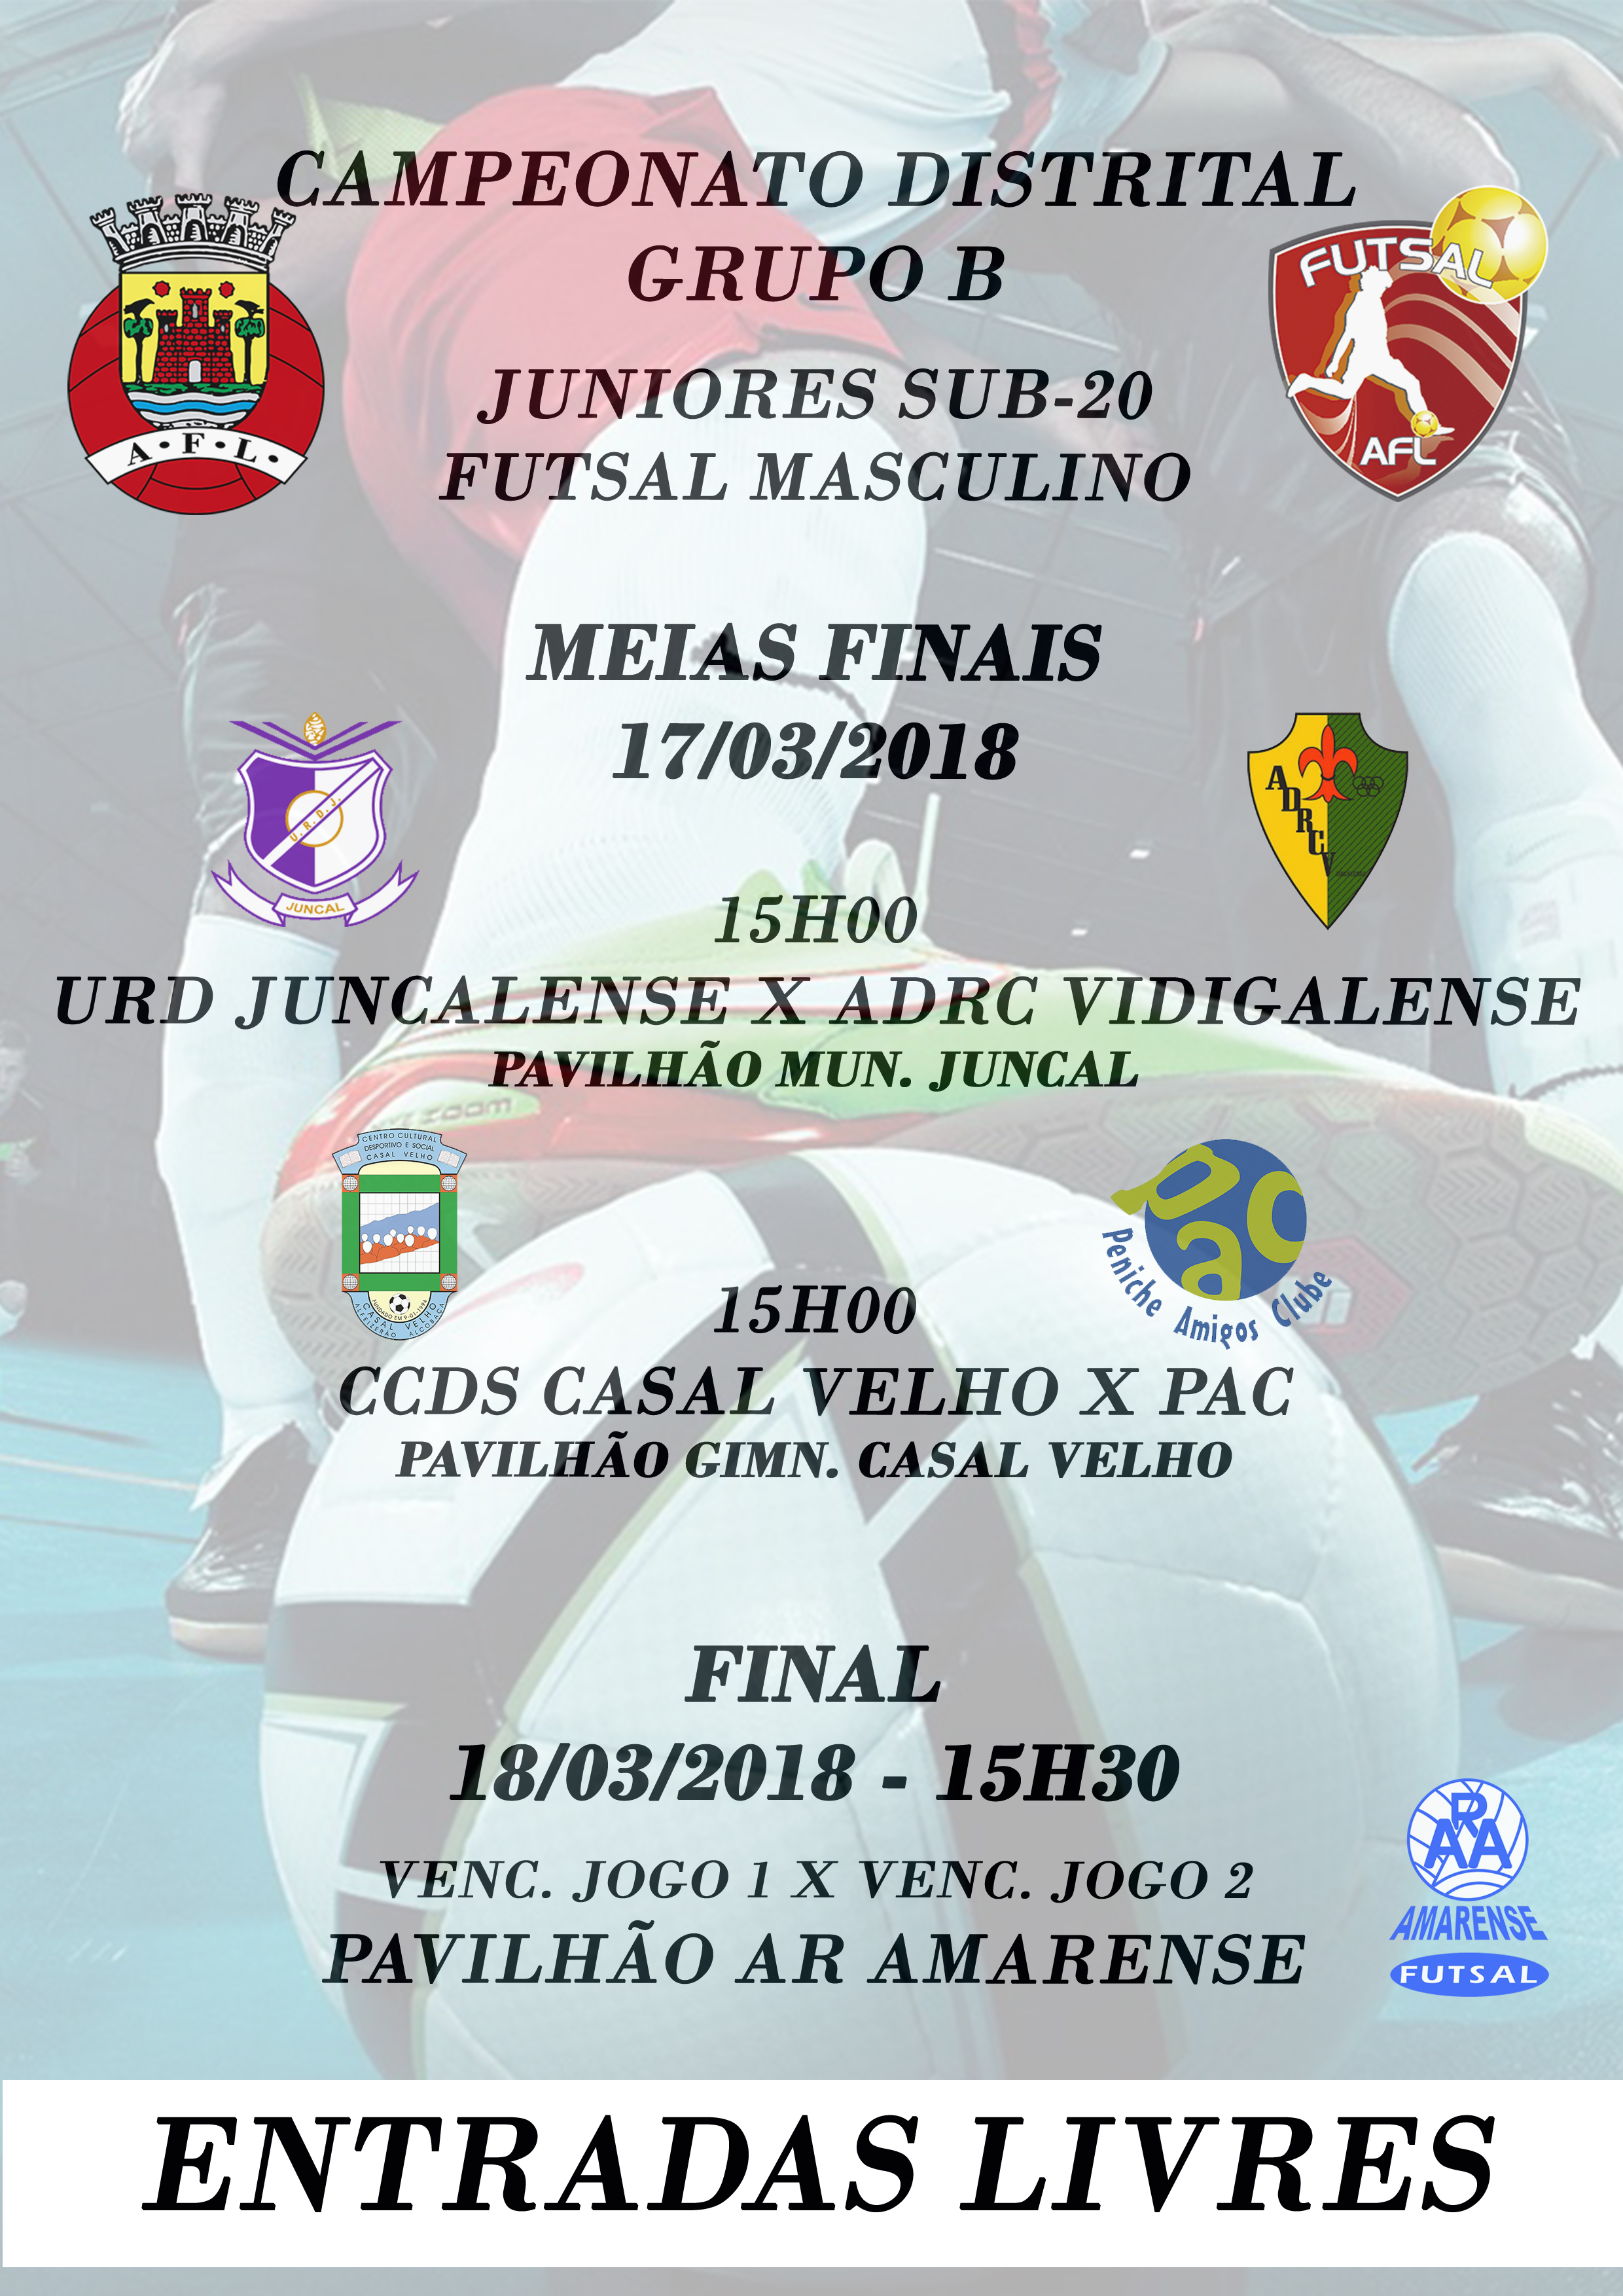 Campeonato Distrital - Grupo B - Juniores Sub/20 - Futsal Masculino!